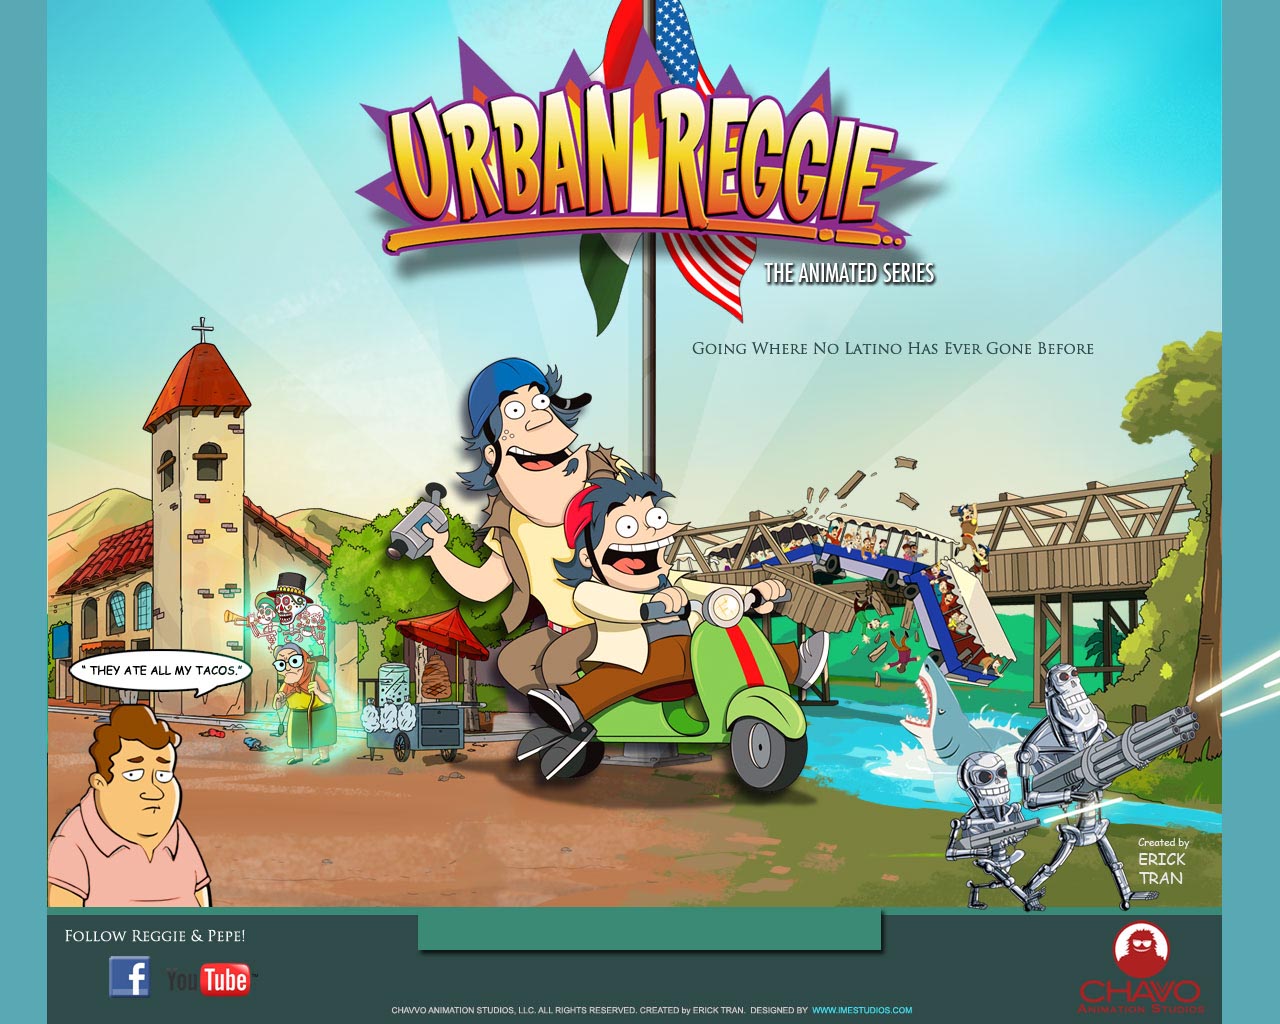 Urban Reggie